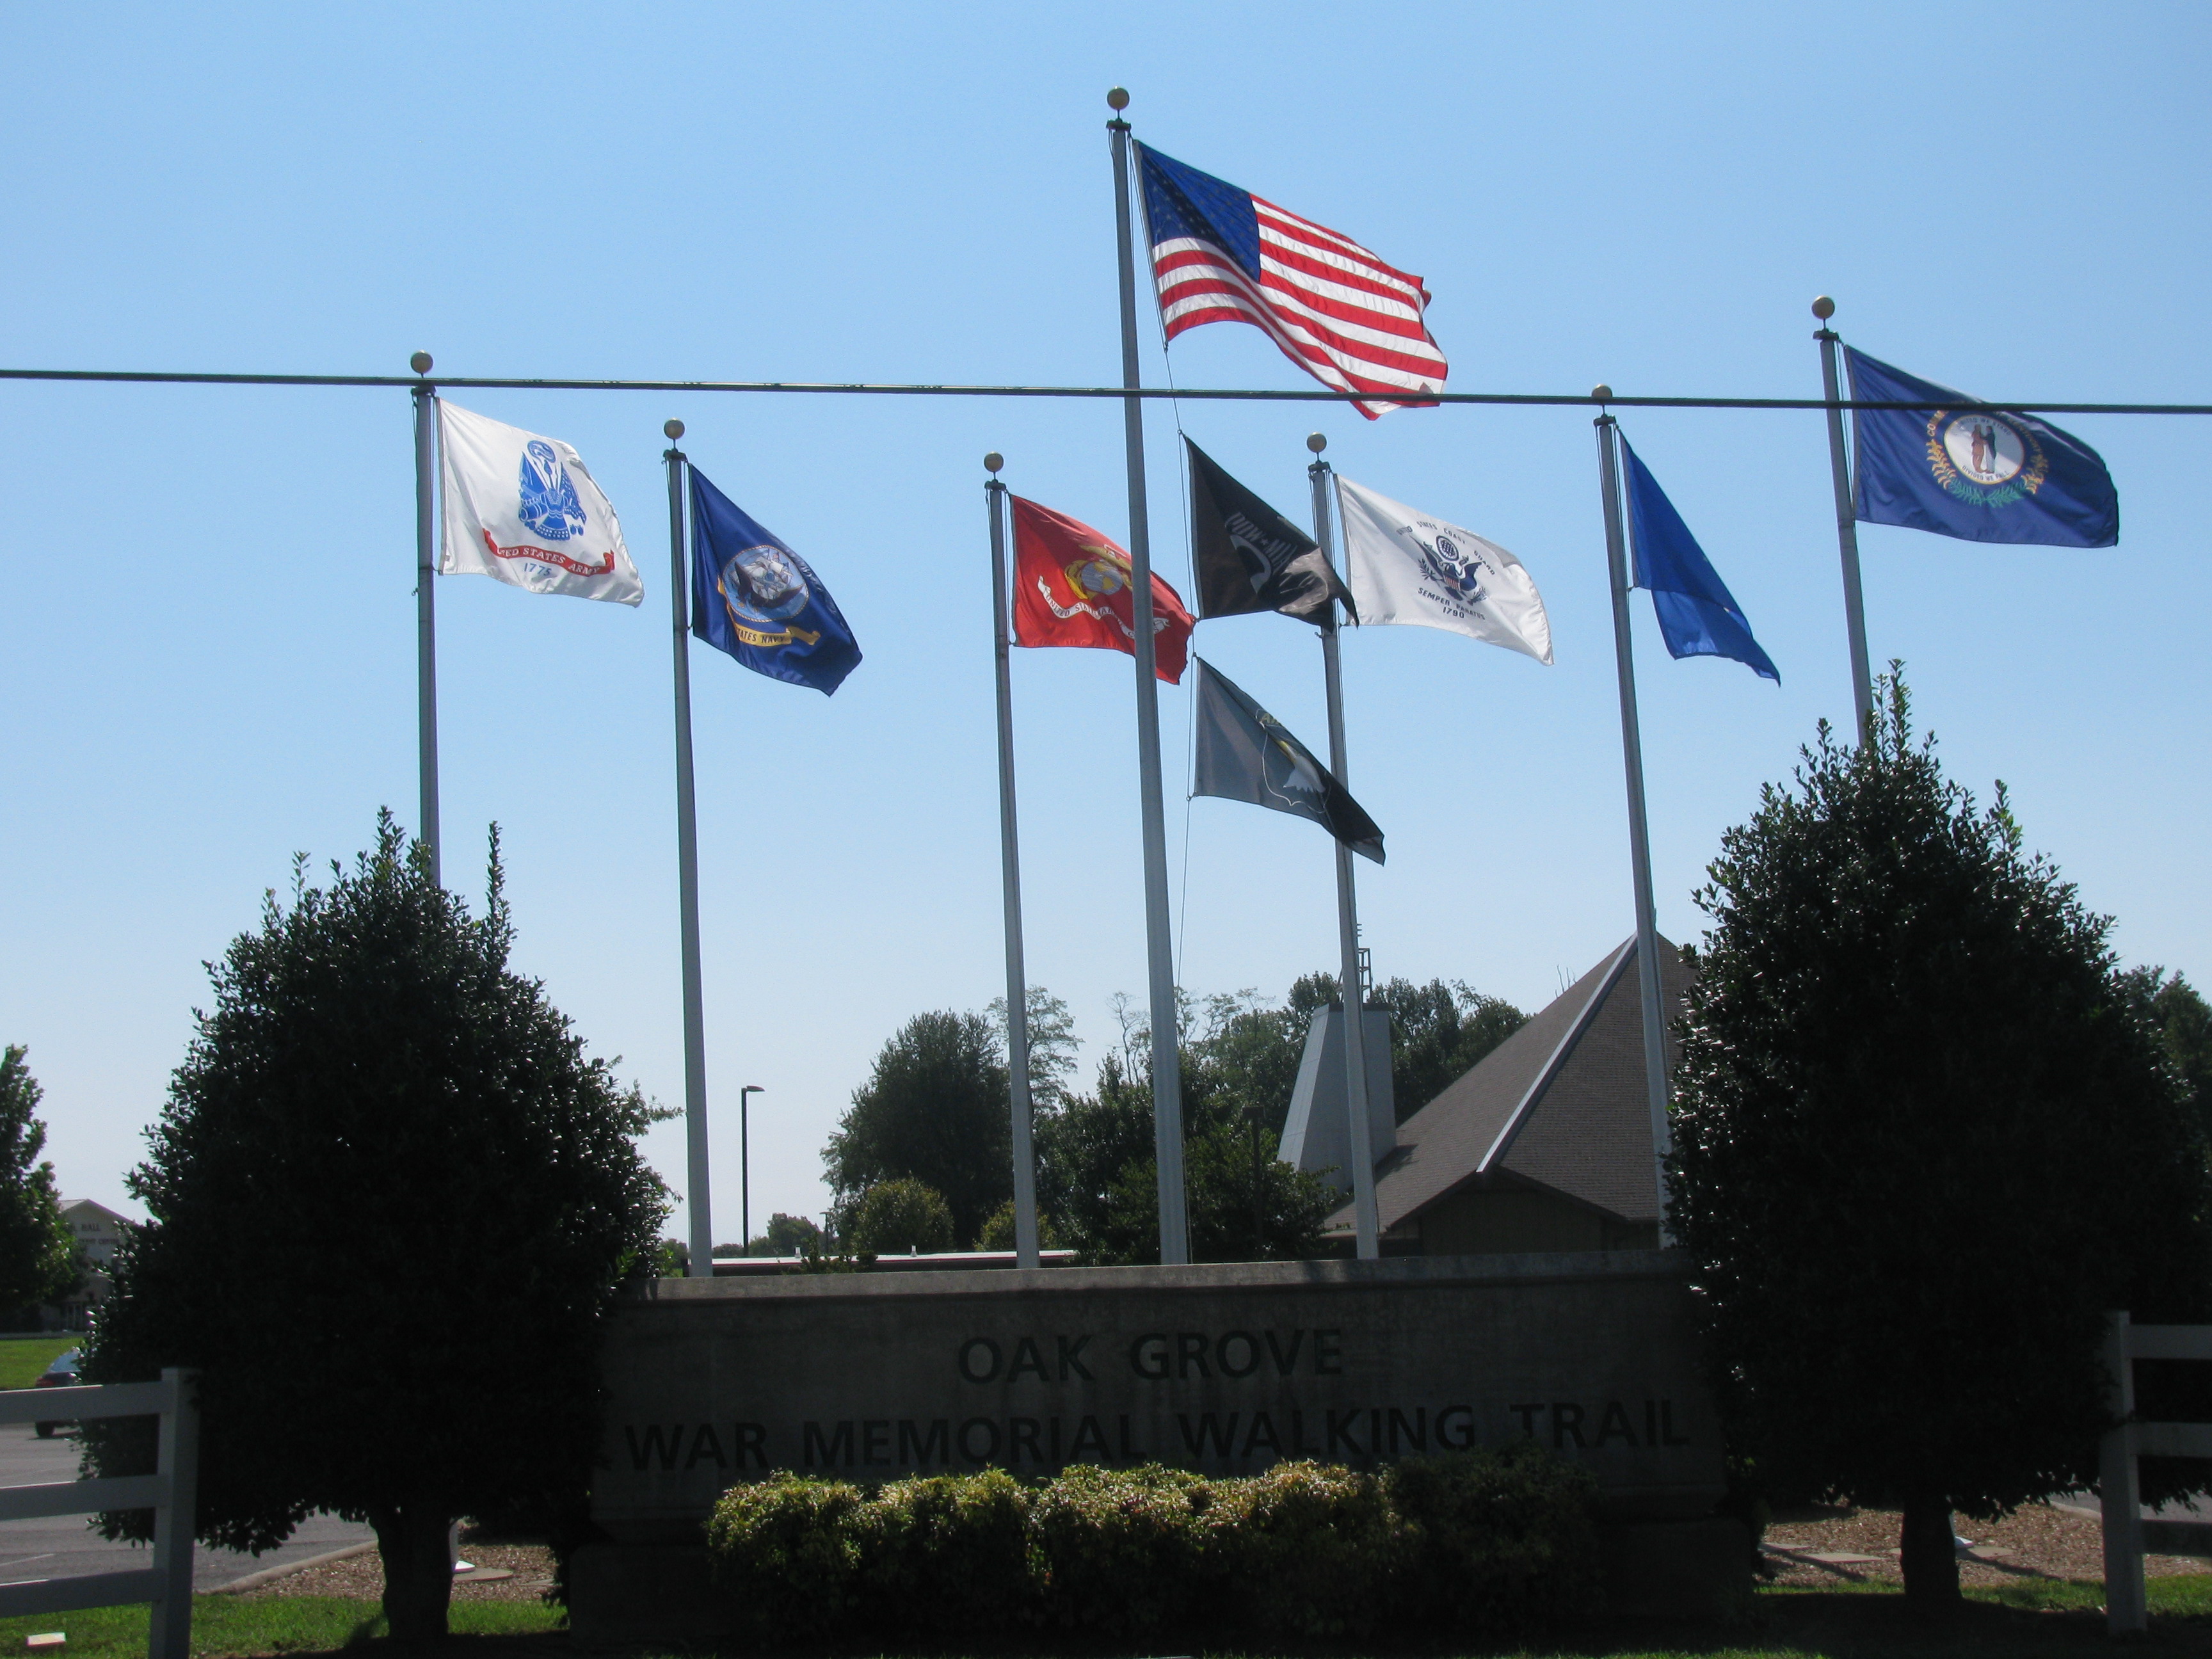 Oak Grove Kentucky War Memorial flagsfeatured image Mrs. HomeFree